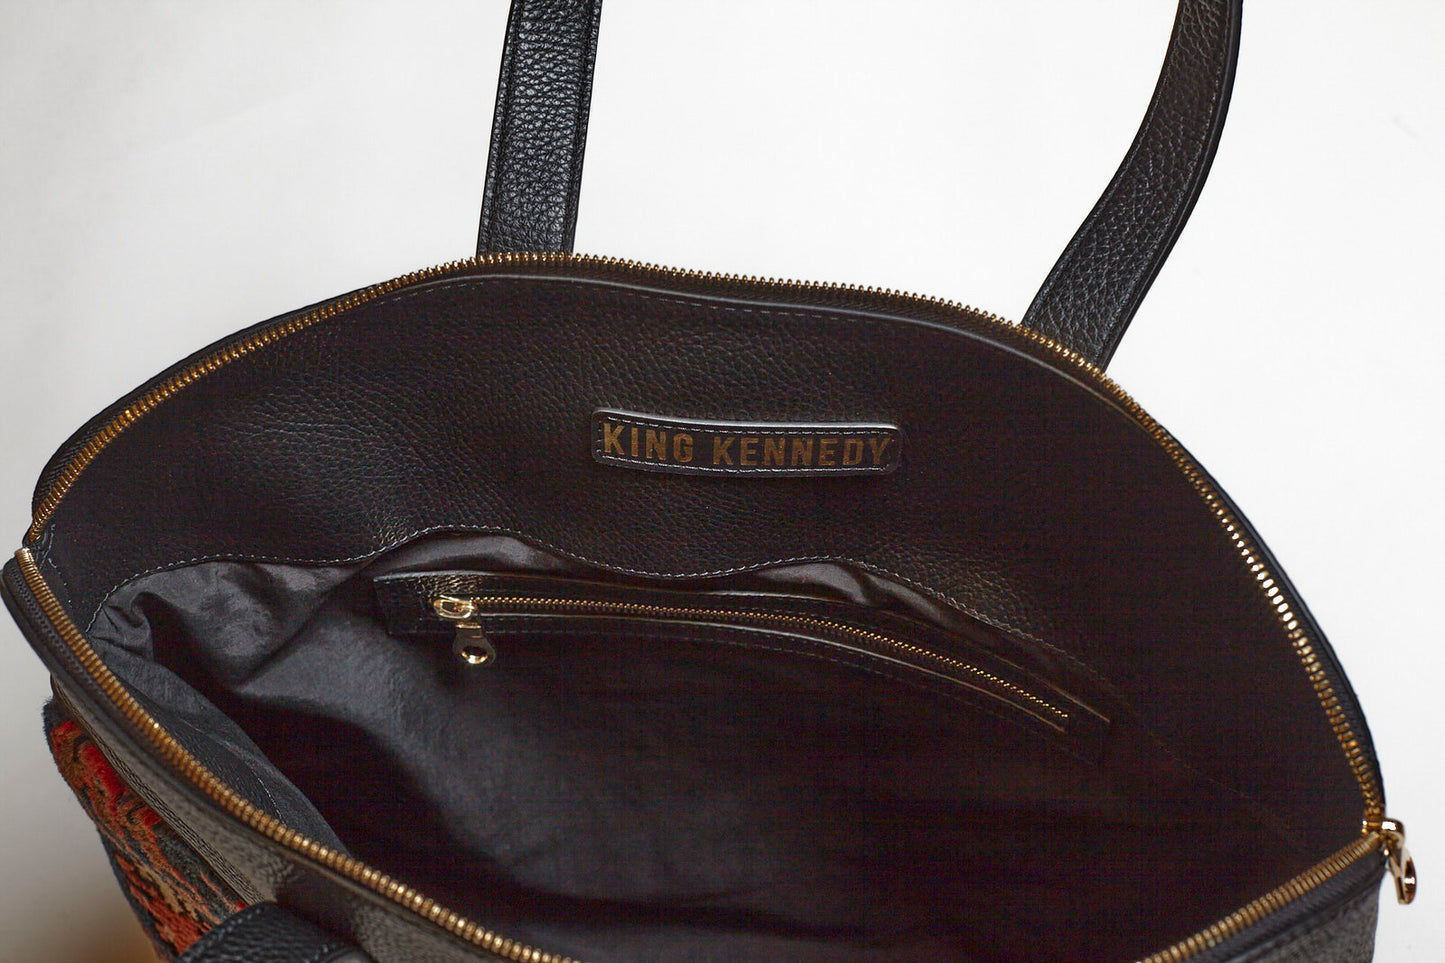 King Kennedy Despina Bag - 00013